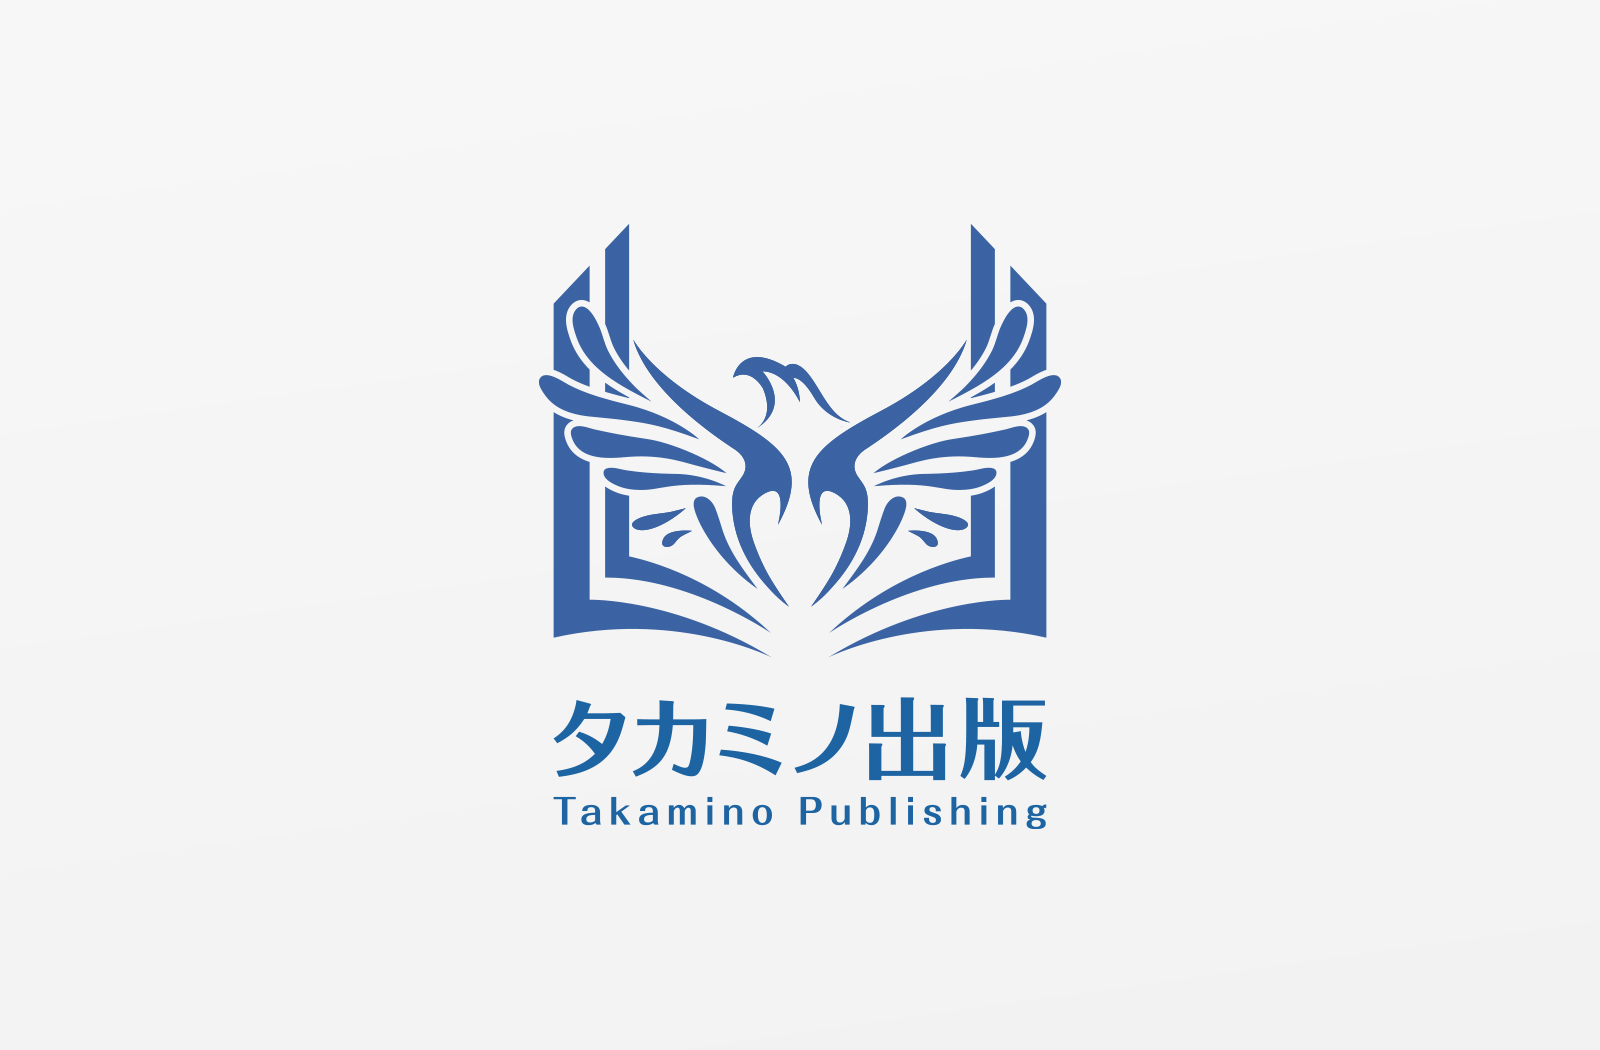 「タカミノ出版」様のロゴデザイン